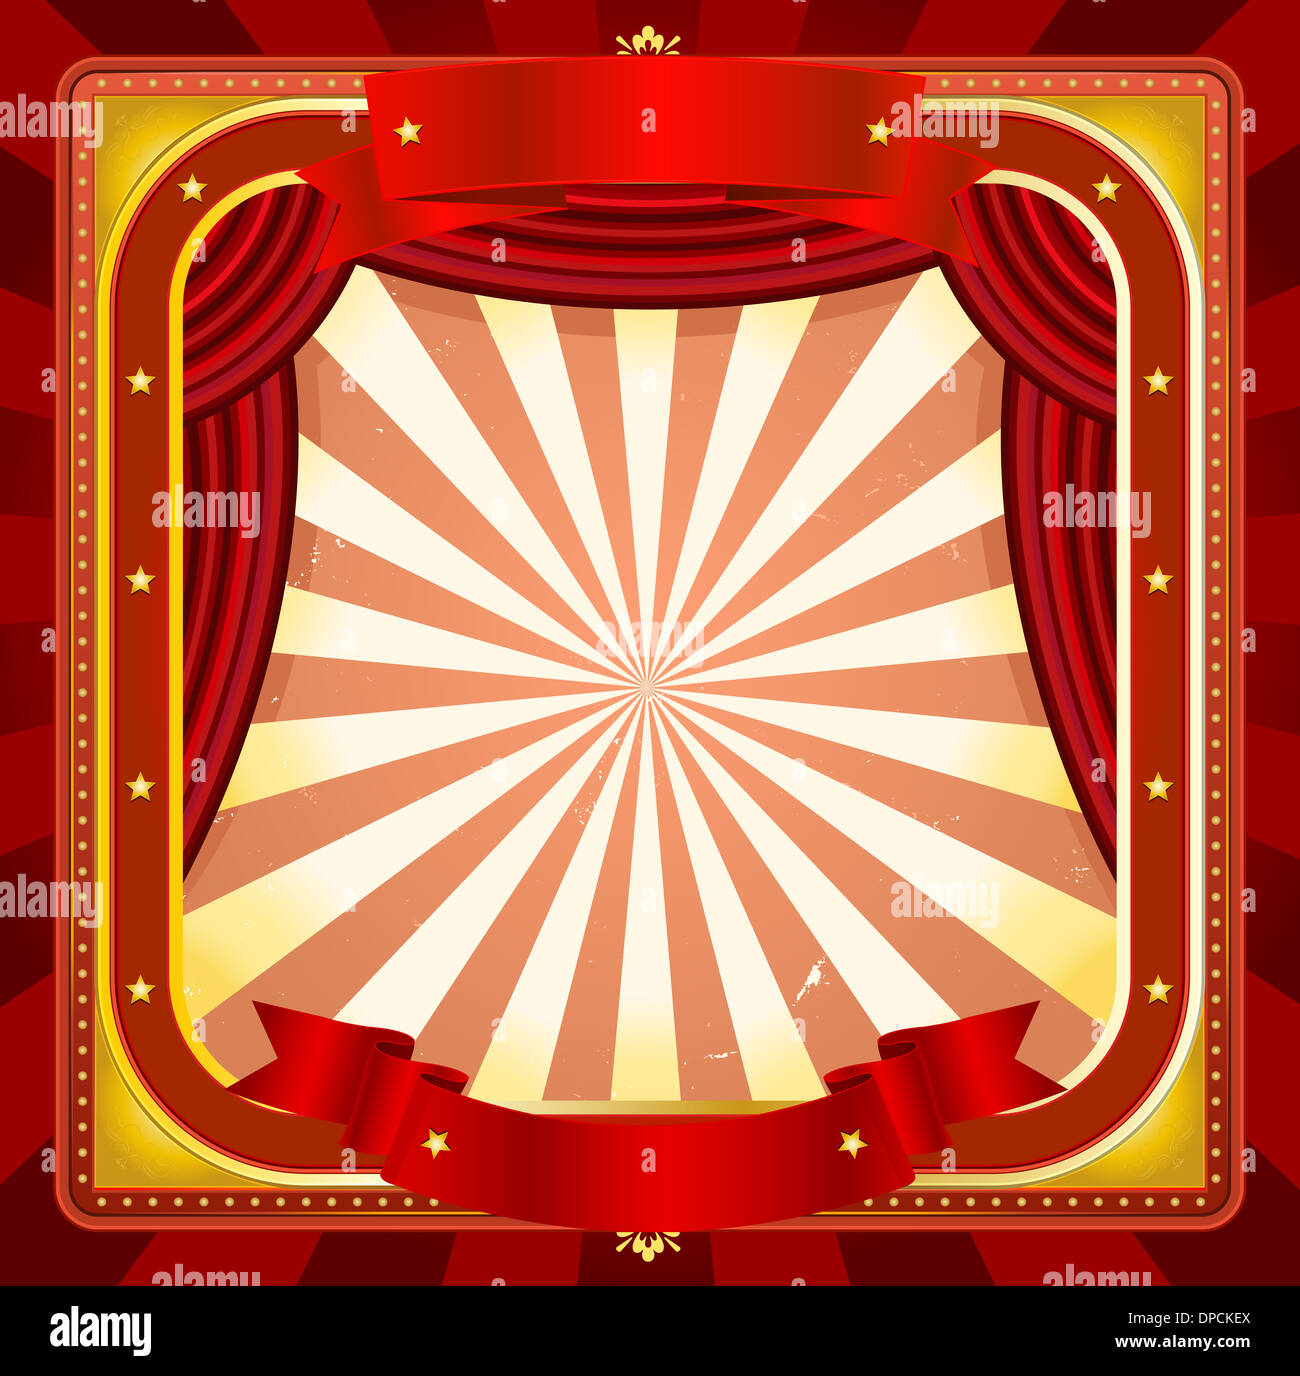 Illustration d'un carré d'arrière-plan de cirque avec des bannières, des rideaux rouges et divers ornements d'or et brillant Banque D'Images